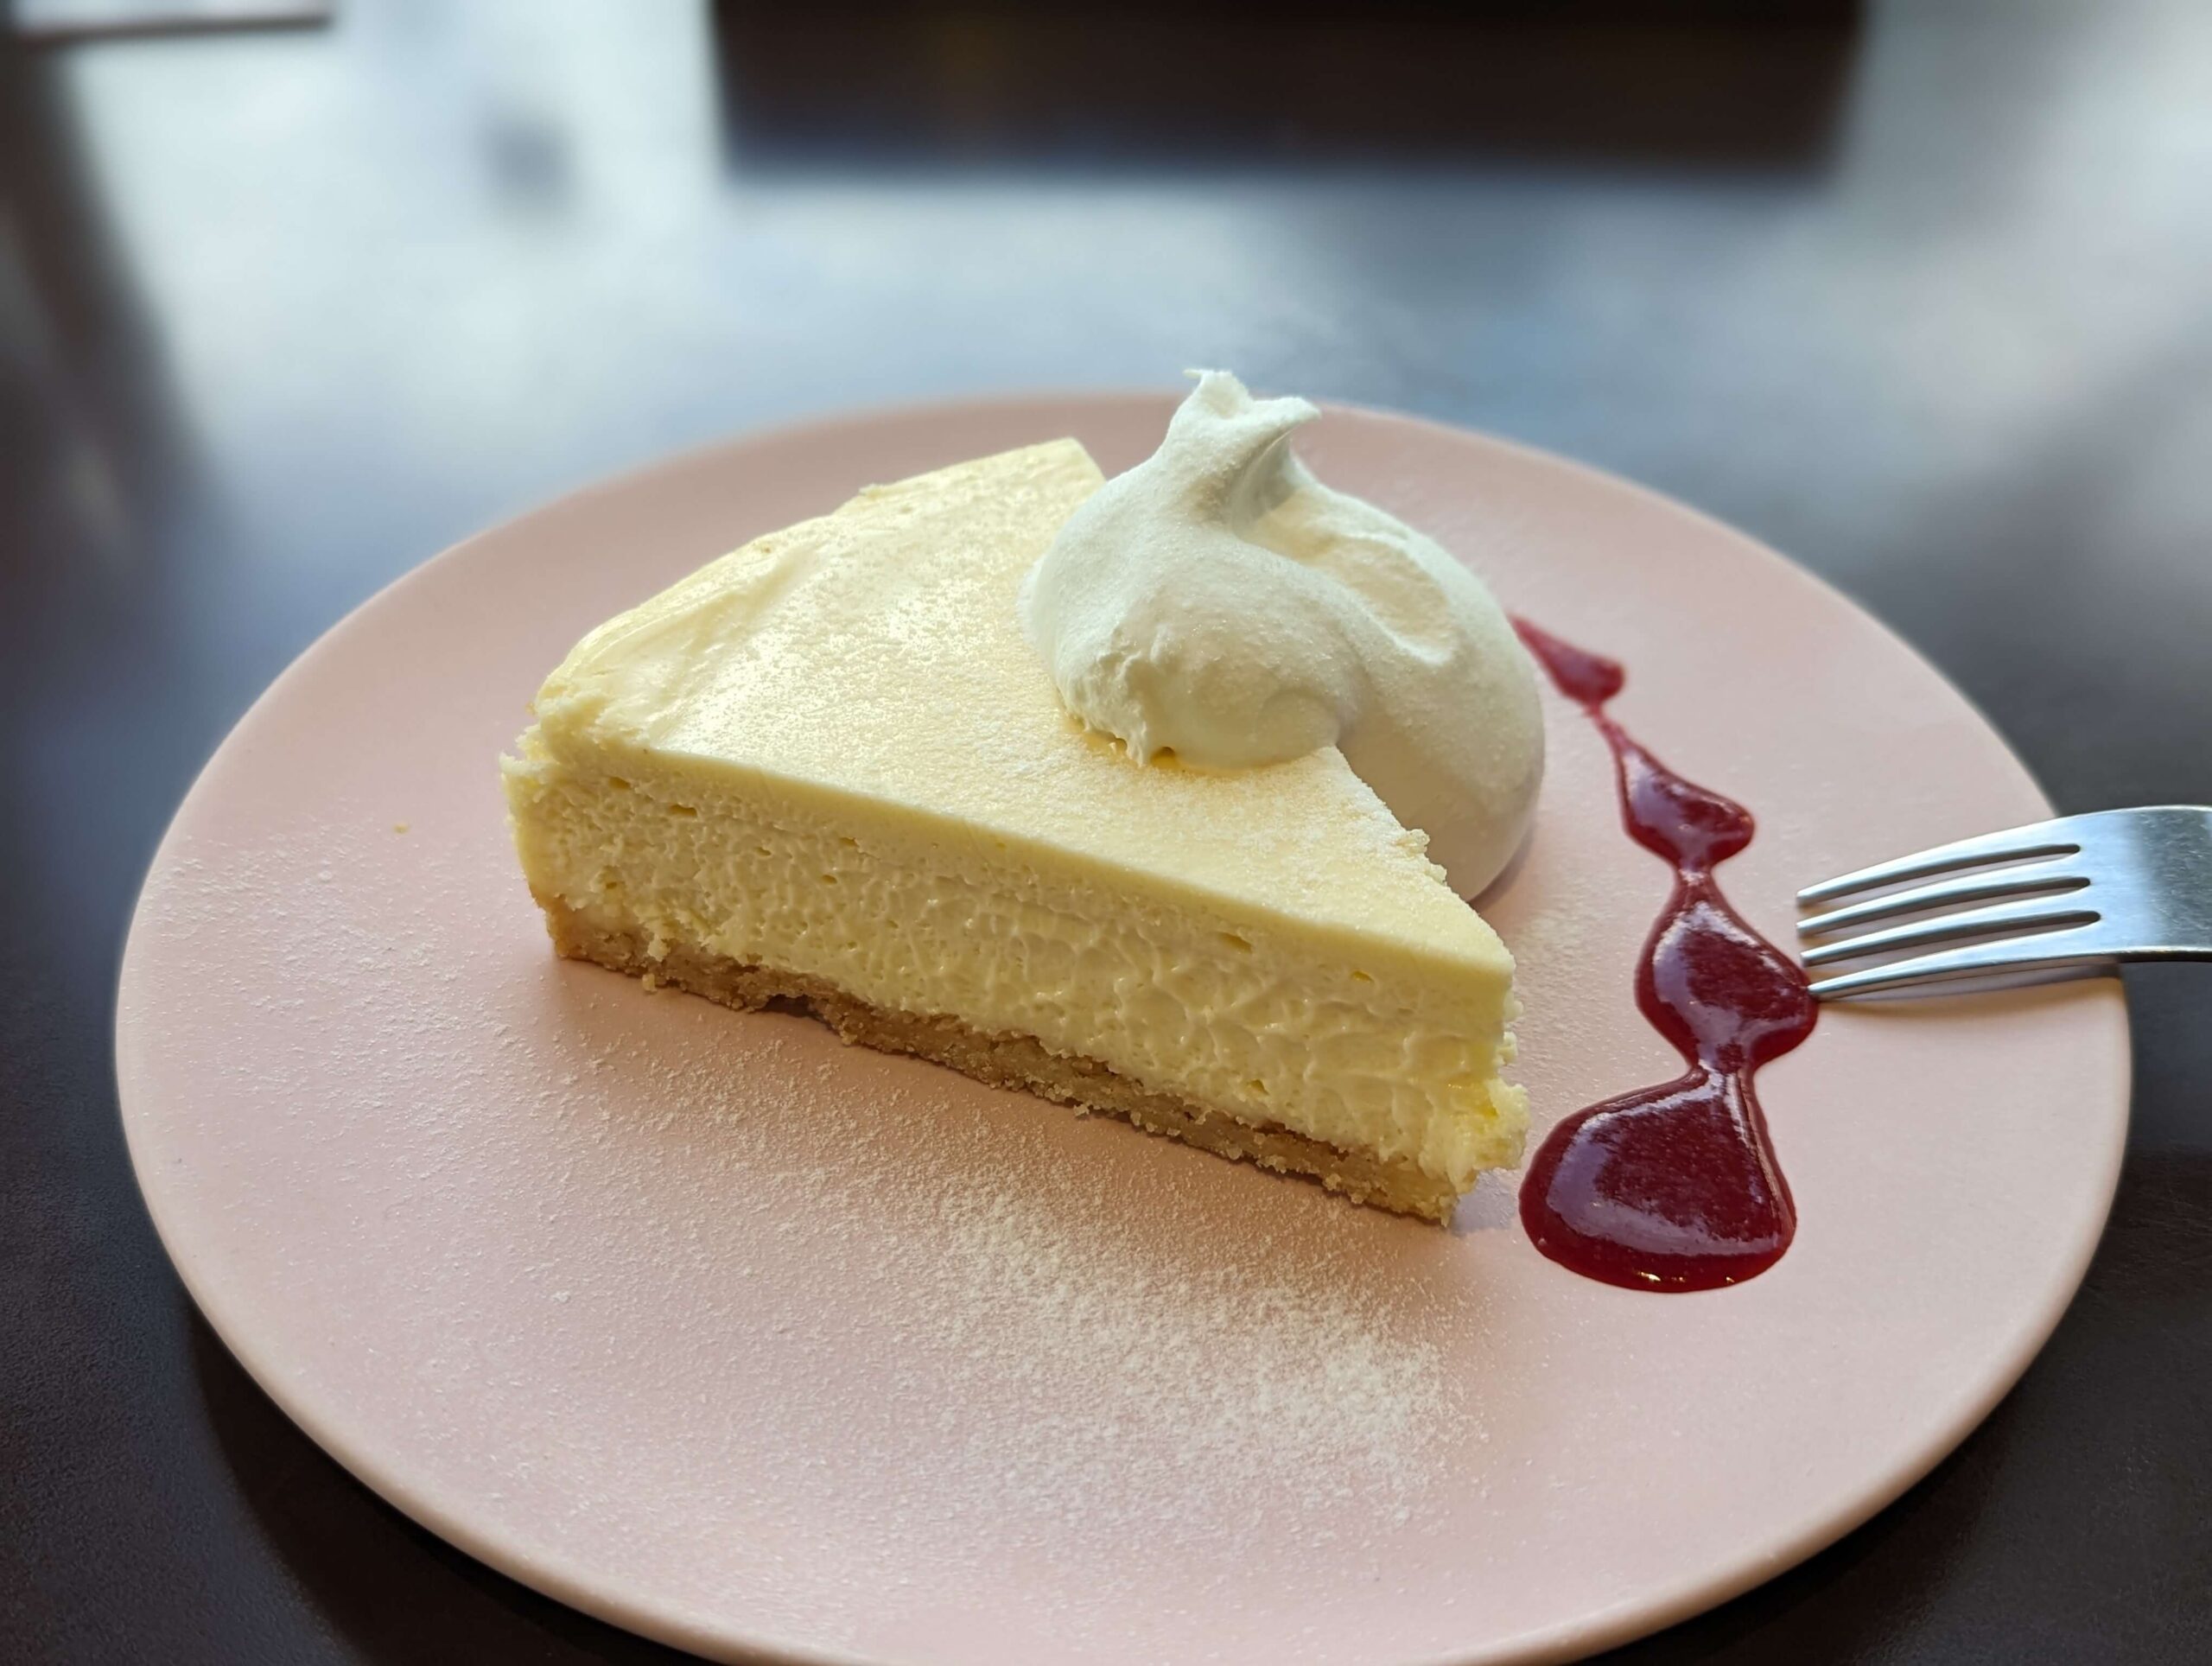 中野・グッドモーニングカフェ「ベイクドチーズケーキ」 (9)